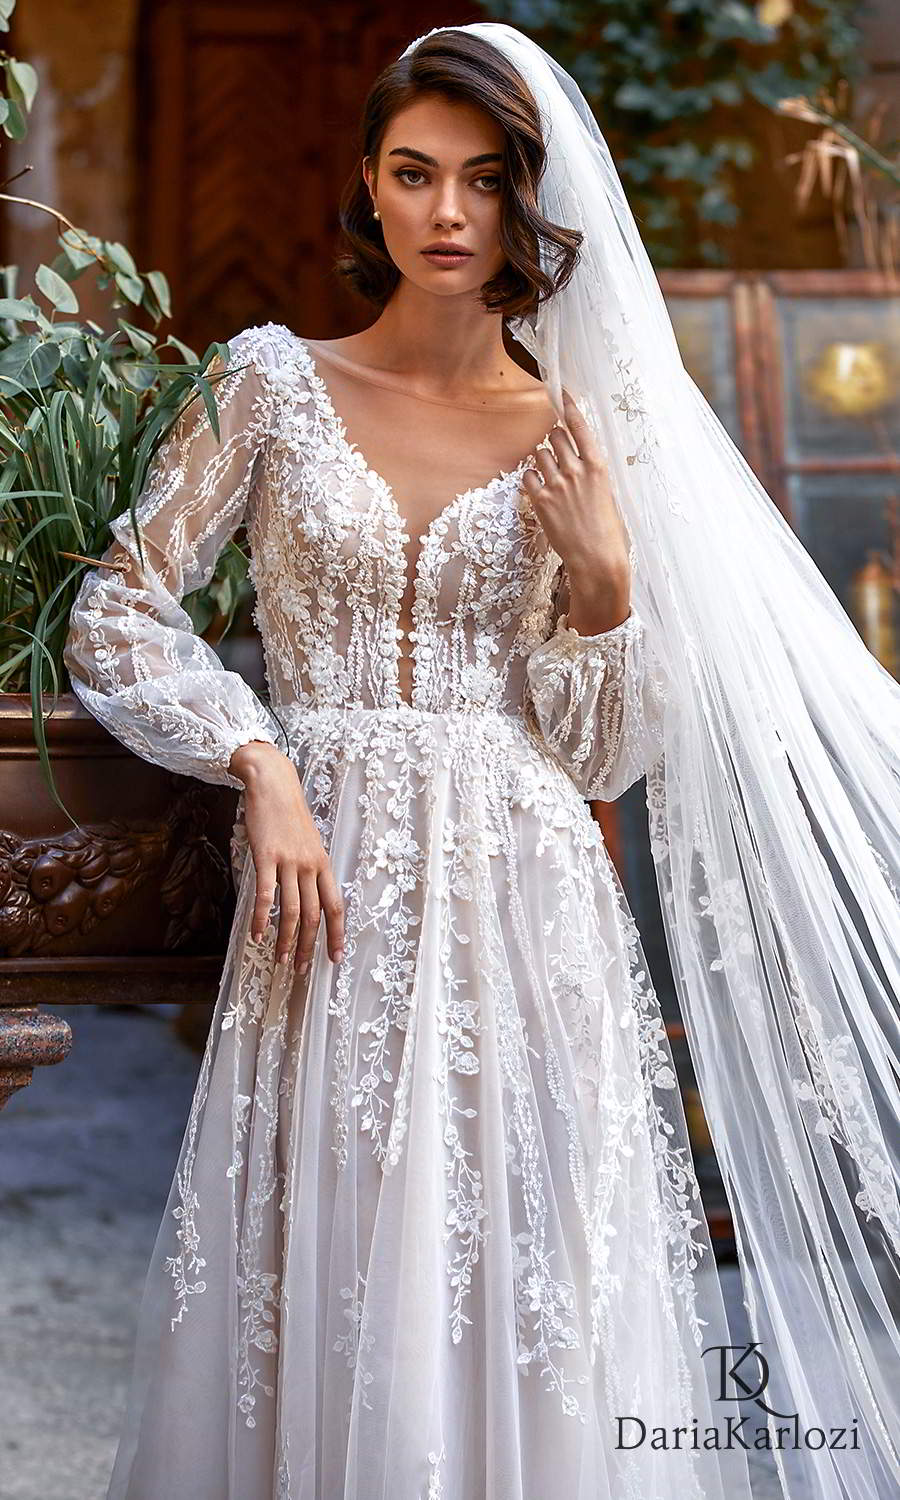 Daria Karlozi 2021 “Graceful Dream” Wedding Dresses